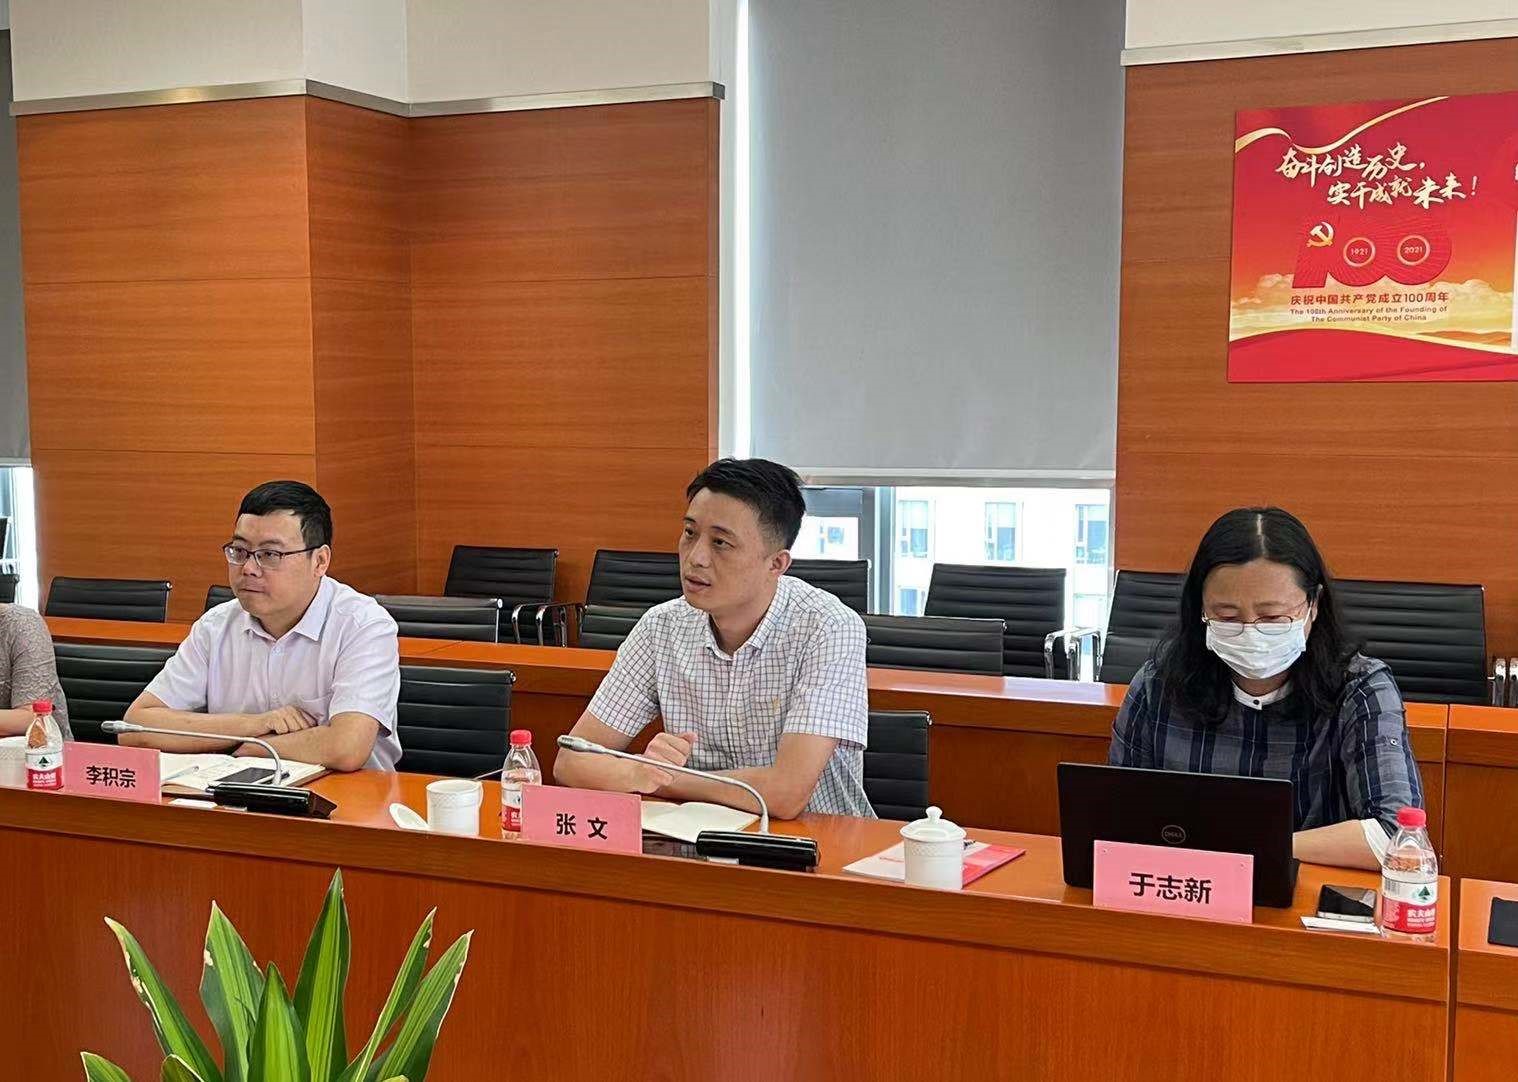 上海市生物医药科技发展中心一行莅临上海技术交易所参观交流 共同推进生物医药行业成果转化